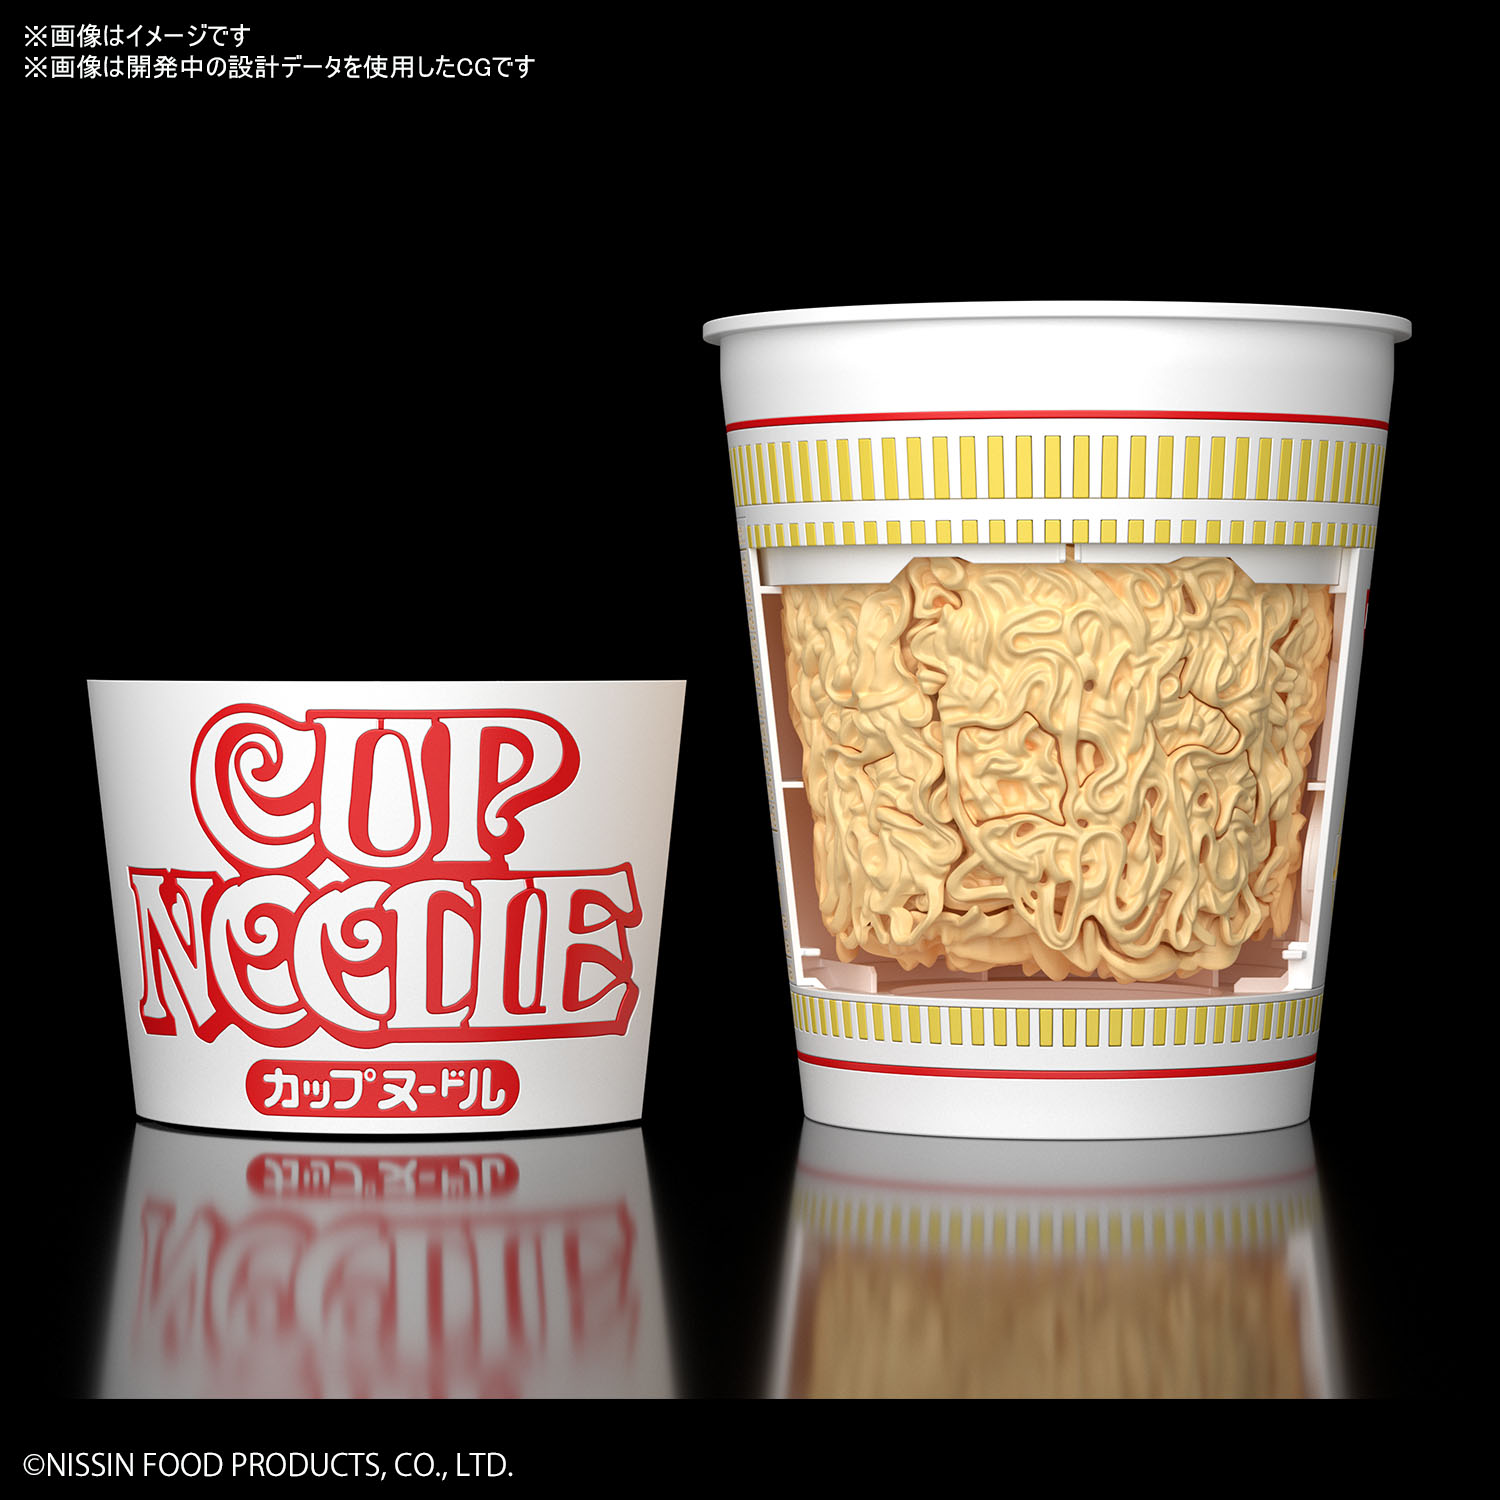 カップヌードル プラモデル CUP NOODLE PLASTIC MODEL 合味道 塑膠模型9